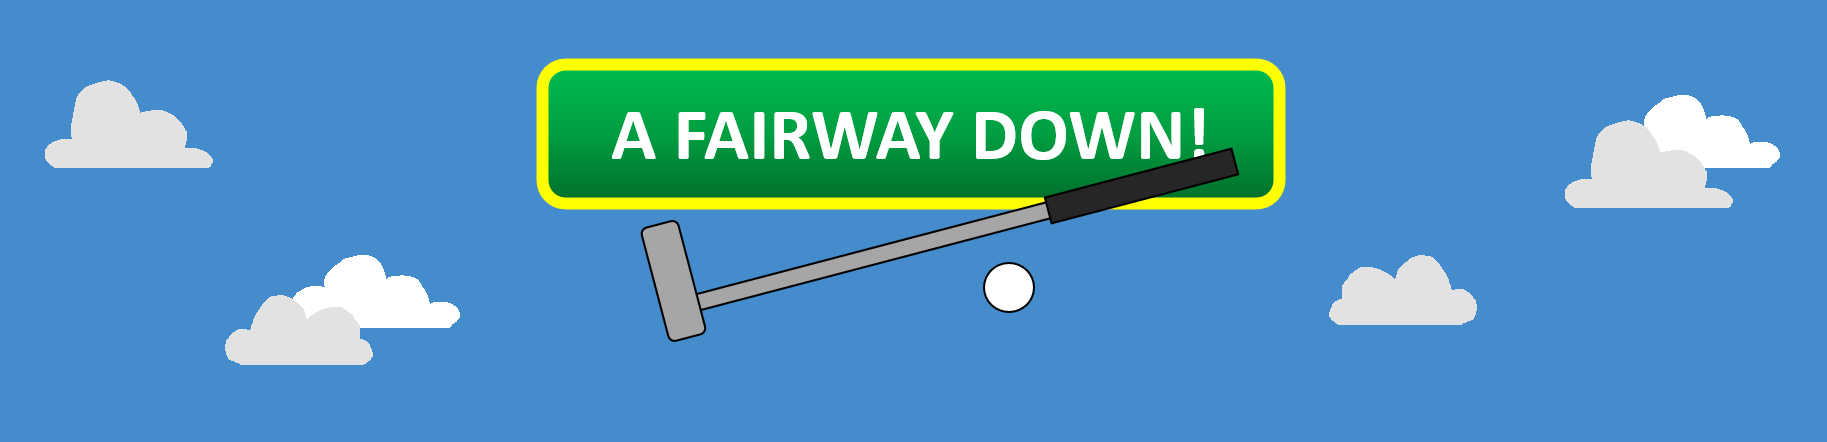 A Fairway Down!